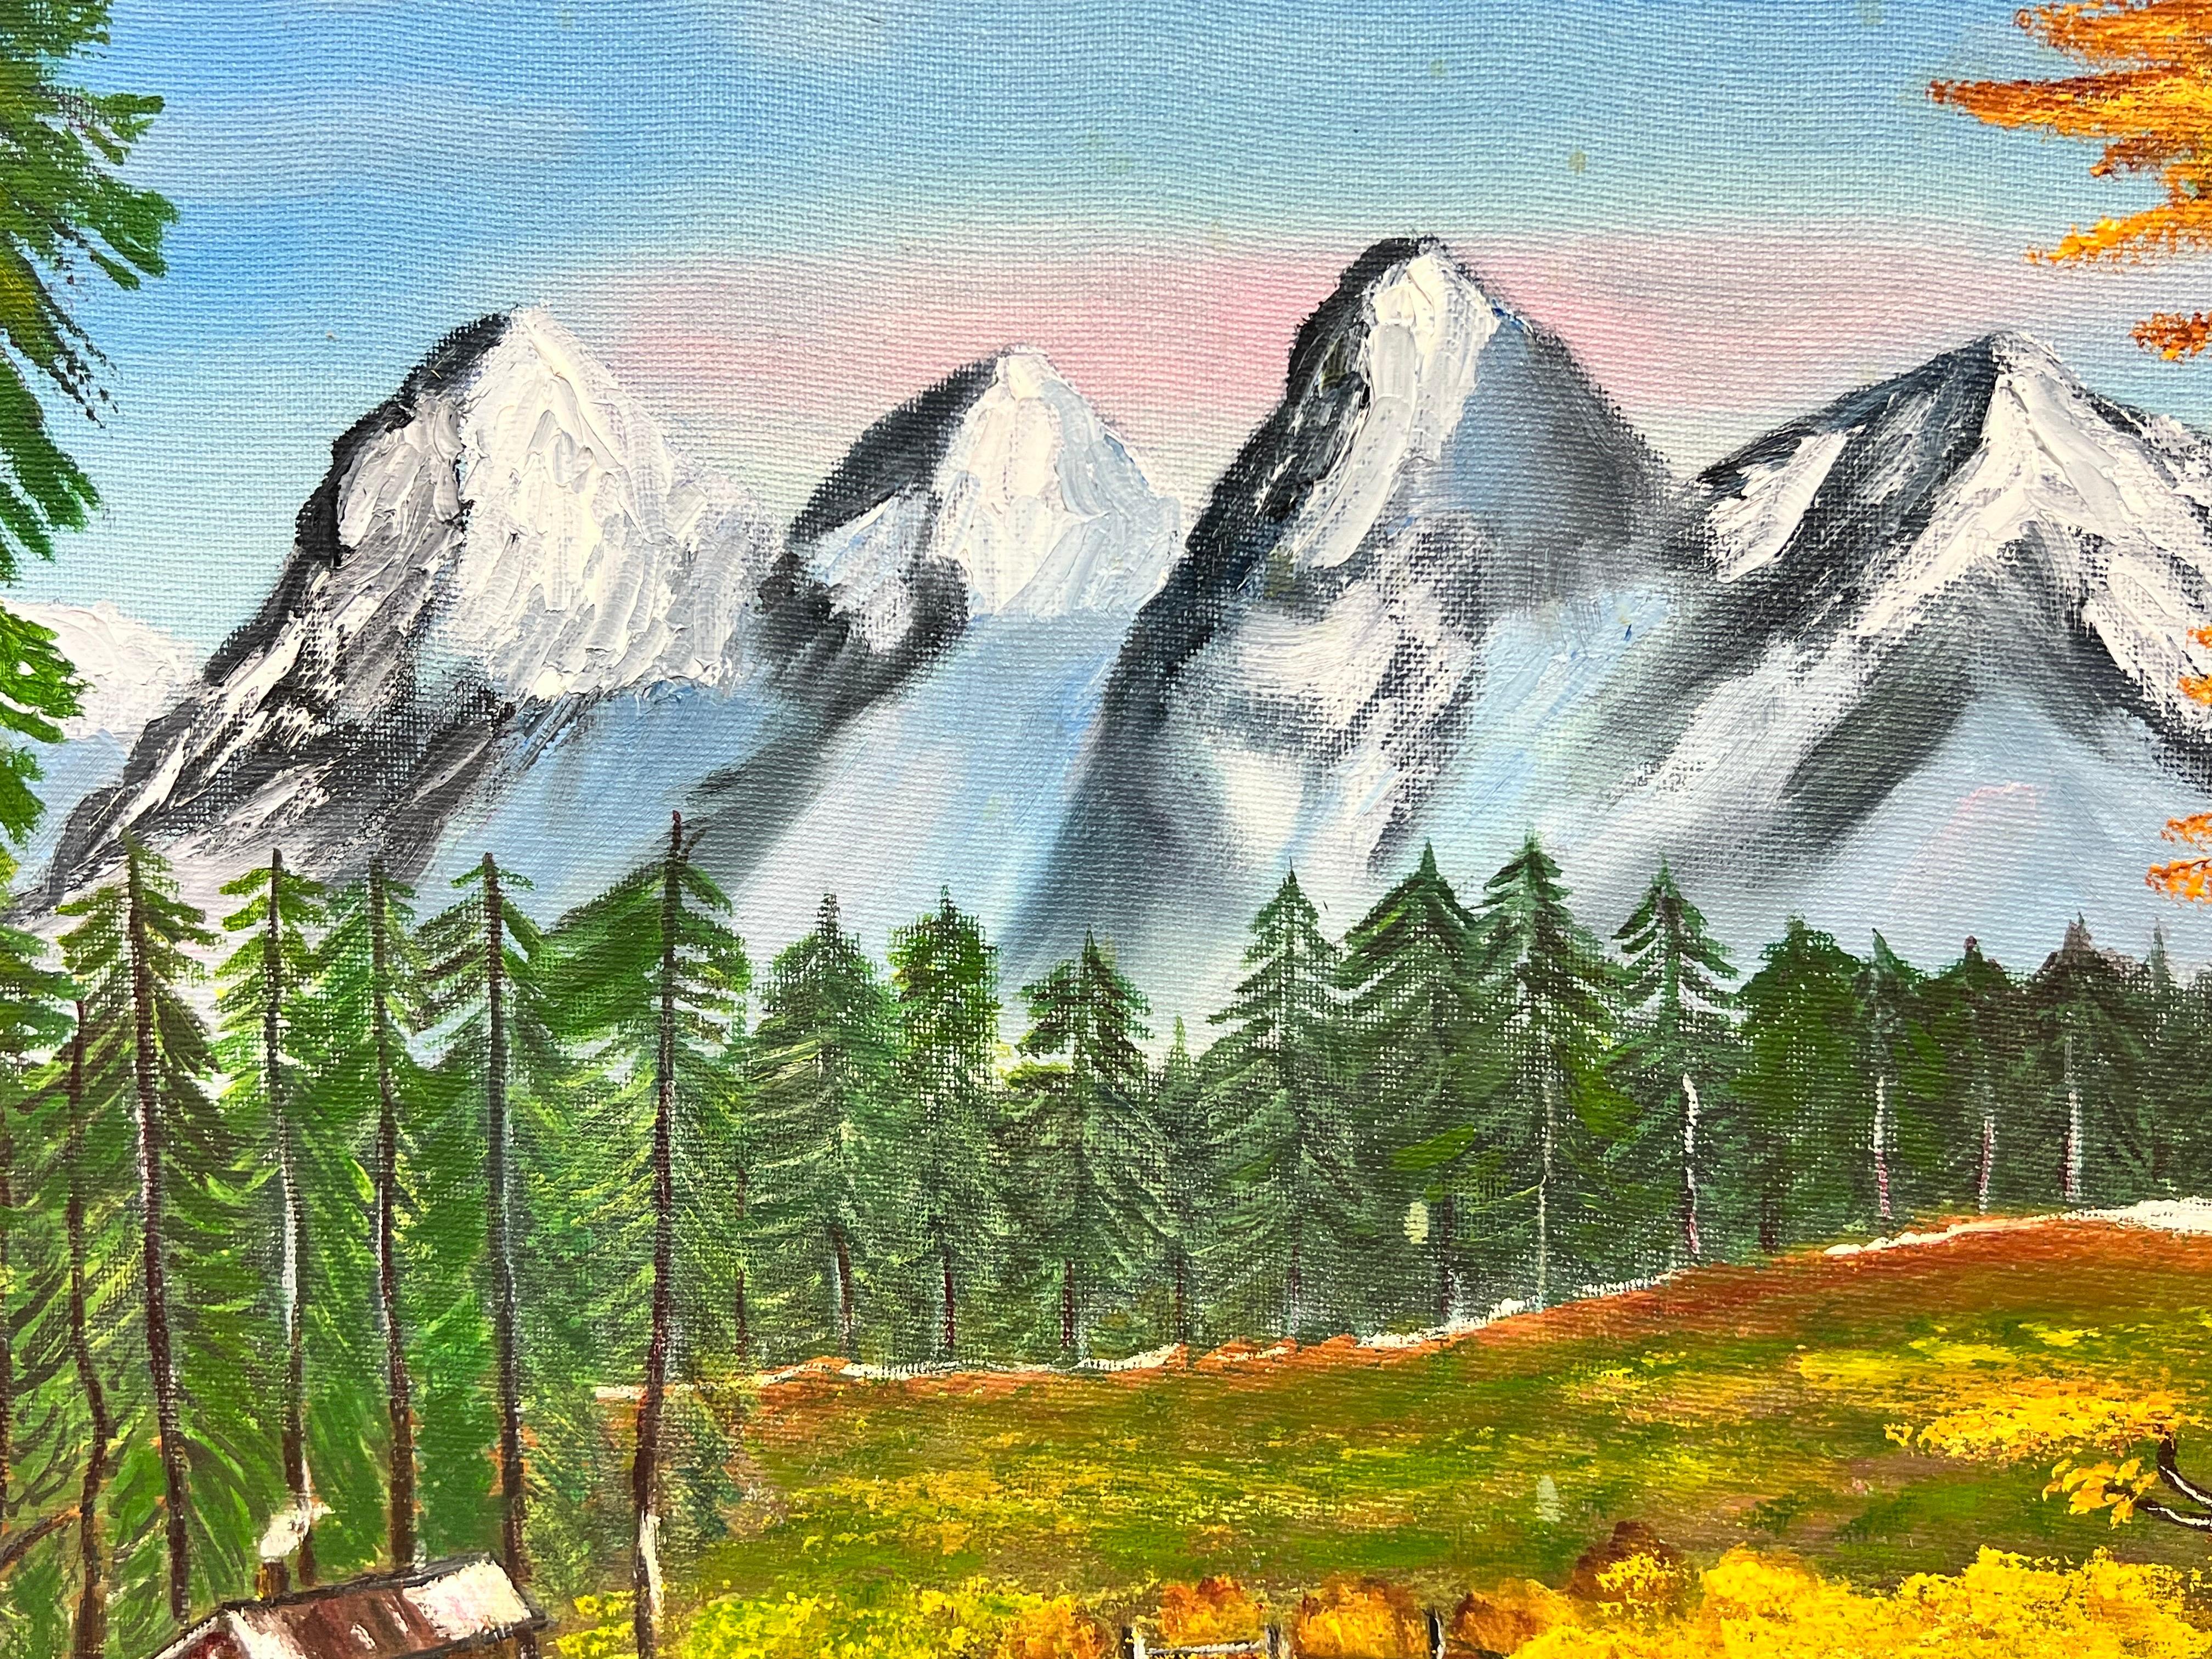 Scottish Highland Snow Capped Mountains, Original britisches Gemälde (Moderne), Painting, von Ben Powell